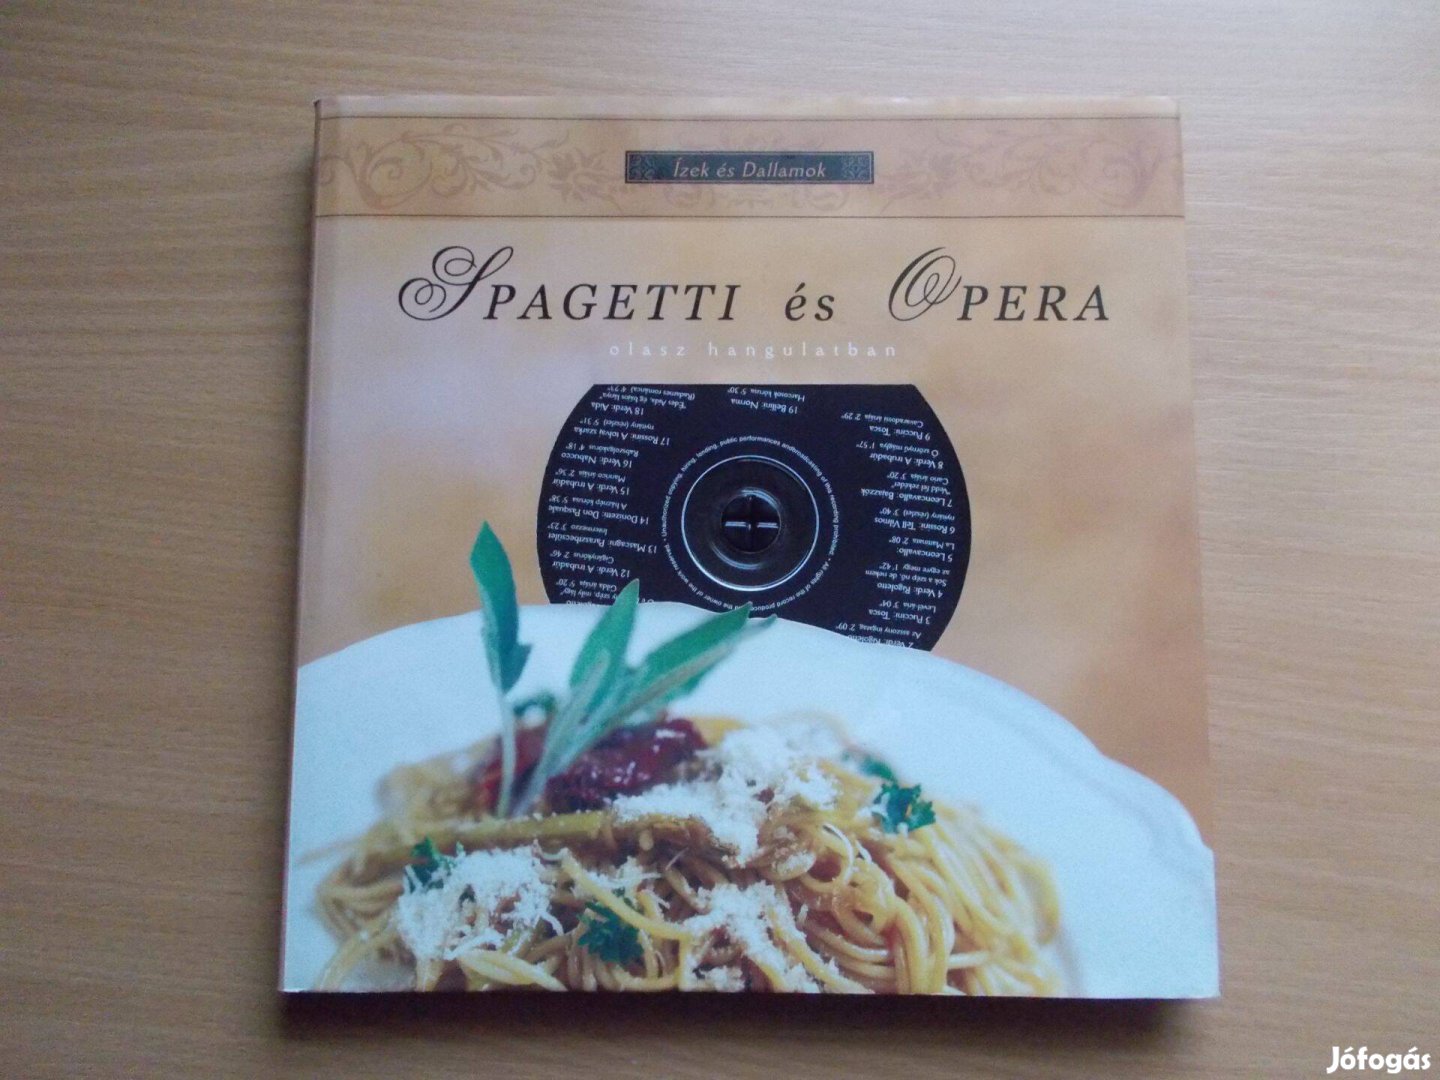 Spagetti és opera (Ízek és dallamok) CD melléklettel